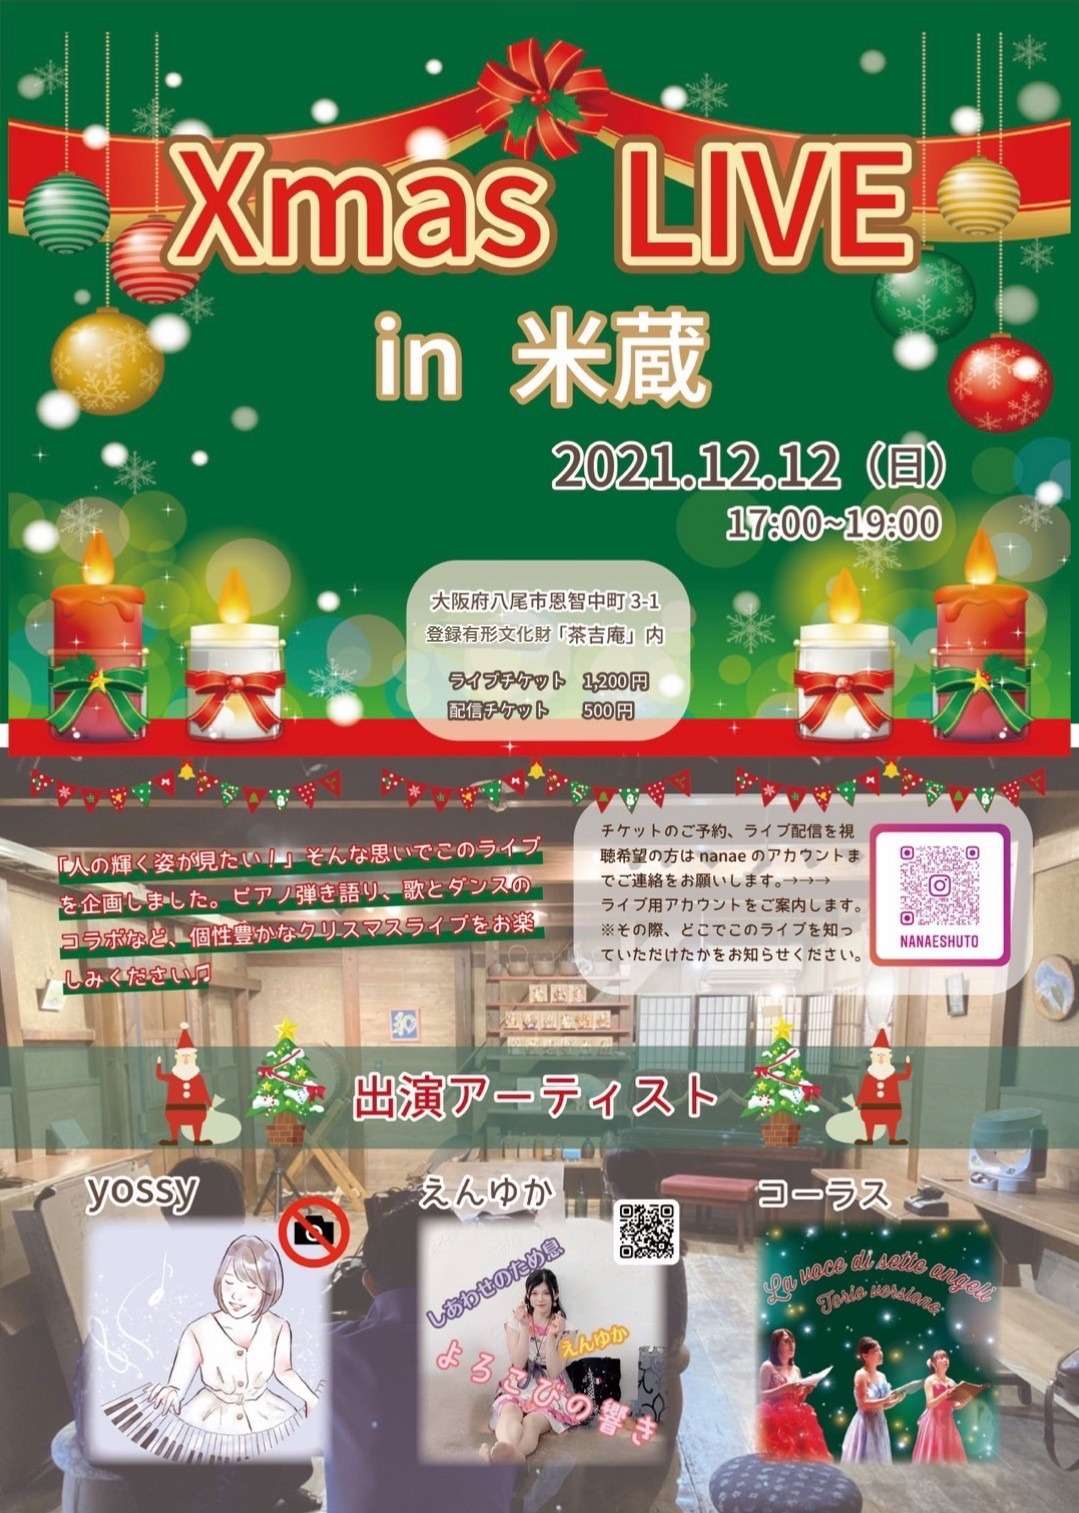 ボイトレ大阪～yossy、12/12『Xmas LIVE in 米蔵』ライブ出演します♪